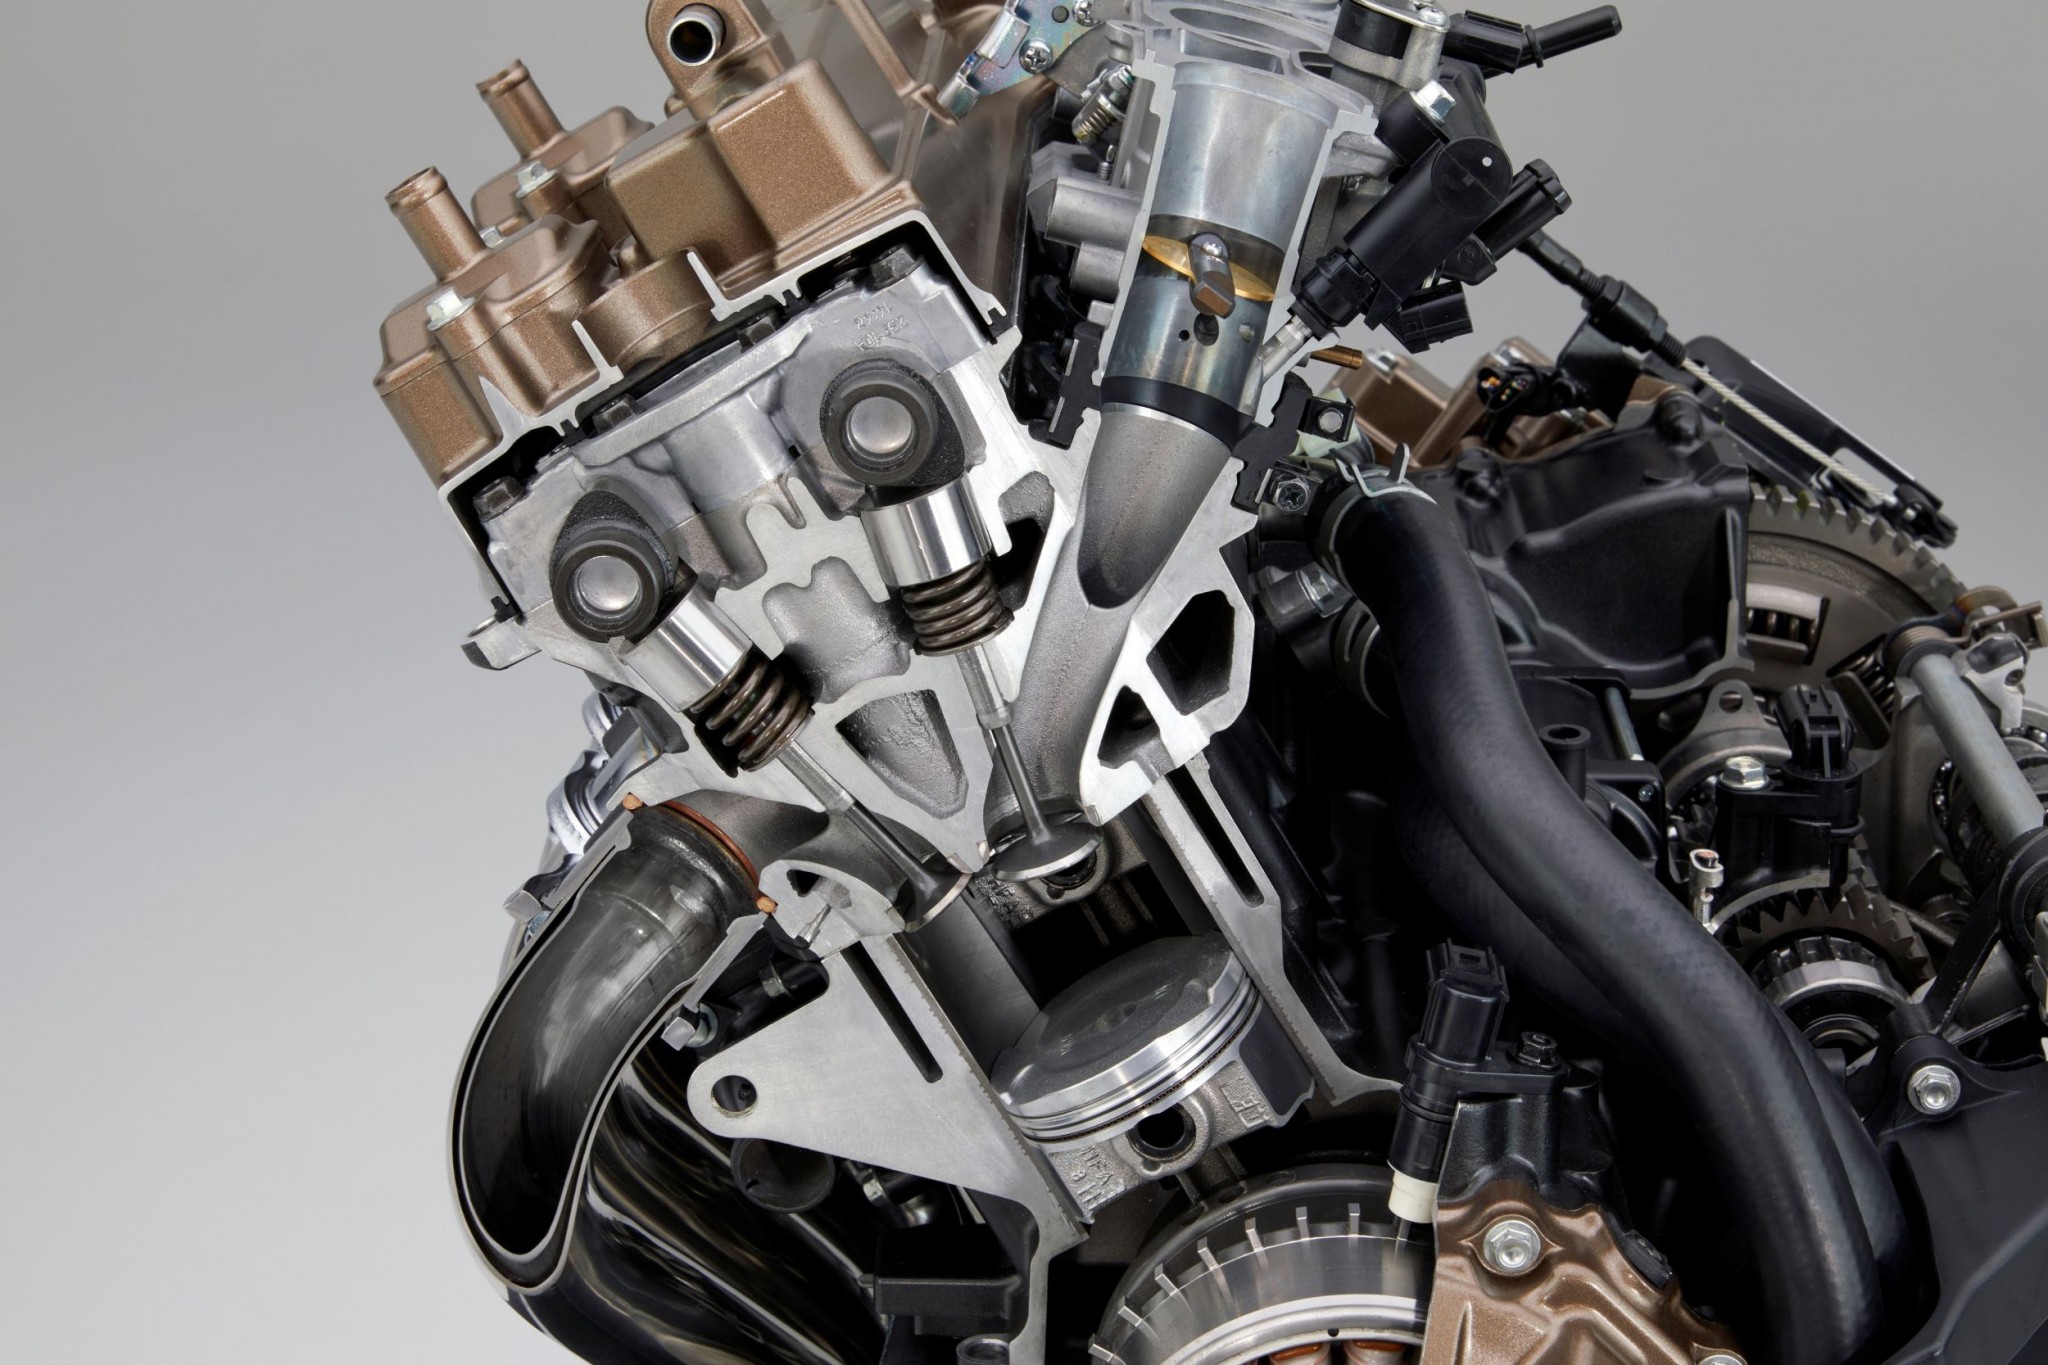 Test elektronske kvačila Honda CBR650R 2024

Honda je nedavno predstavila novu verziju svog popularnog motocikla CBR650R, koji sada dolazi sa elektronskim kvačilom, poznatim kao E-Clutch. Ova inovacija obećava da će olakšati vožnju omogućavajući vozačima da menjaju brzine bez potrebe za ručnim korišćenjem kvačila. 

Elektronsko kvačilo funkcioniše tako što automatski reguliše pritisak potreban za aktiviranje kvačila, što omogućava glatke promene brzina bez prekida u isporuci snage. Ovo je posebno korisno pri vožnji u gradu, gde česte promene brzina mogu biti naporne i otežavaju koncentraciju na saobraćaj.

Testiranje ovog sistema pokazalo je da E-Clutch ne samo da olakšava upravljanje motociklom, već i povećava sigurnost vožnje. Vozači mogu da se fokusiraju na okolinu bez brige o mehaničkim aspektima vožnje, što je posebno važno za manje iskusne vozače.

Honda CBR650R sa elektronskim kvačilom biće dostupna na tržištu od 2024. godine i očekuje se da će privući veliki broj kupaca, kako iskusnih tako i onih koji tek ulaze u svet motociklizma. Ovaj model predstavlja značajan korak napred u tehnologiji motocikala i potencijalno postavlja nove standarde u industriji. - Слика 47